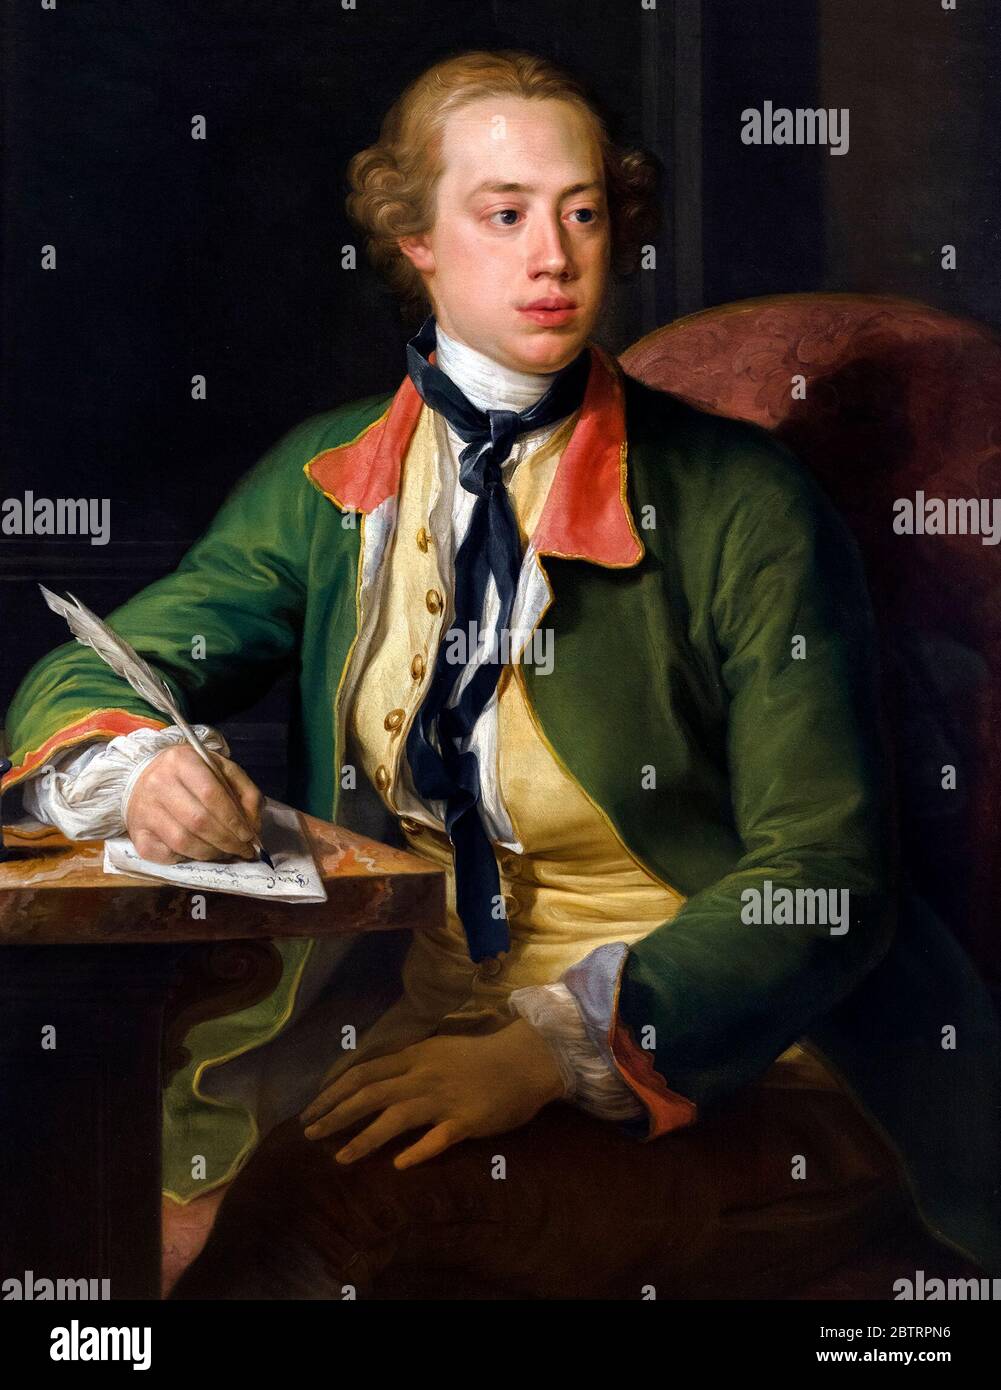 Frederick North, 2e comte de Guilford (Lord North : 1732-1792), portrait de Pompeo Batoni, huile sur toile, 1752-56. Banque D'Images